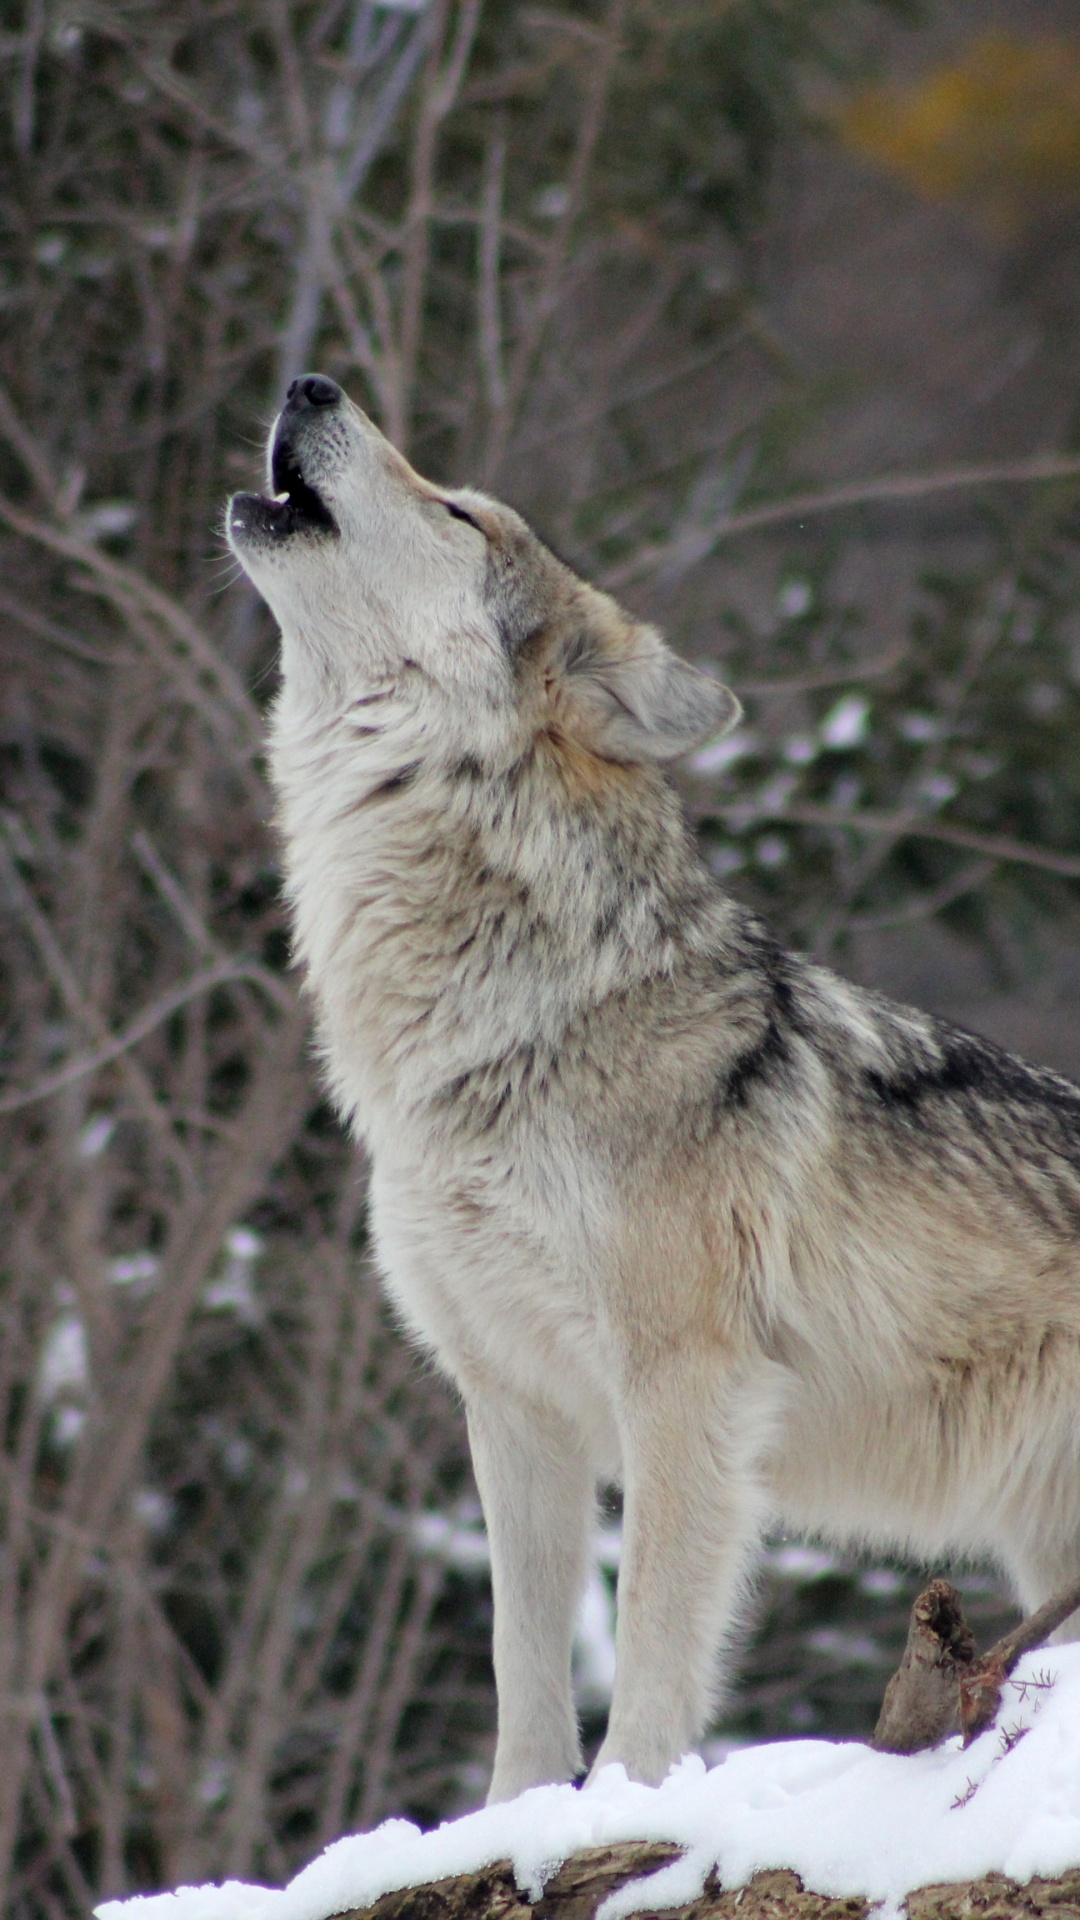 土狼, 狼, 野生动物, 那只狼狗, 狗喜欢哺乳动物 壁纸 1080x1920 允许